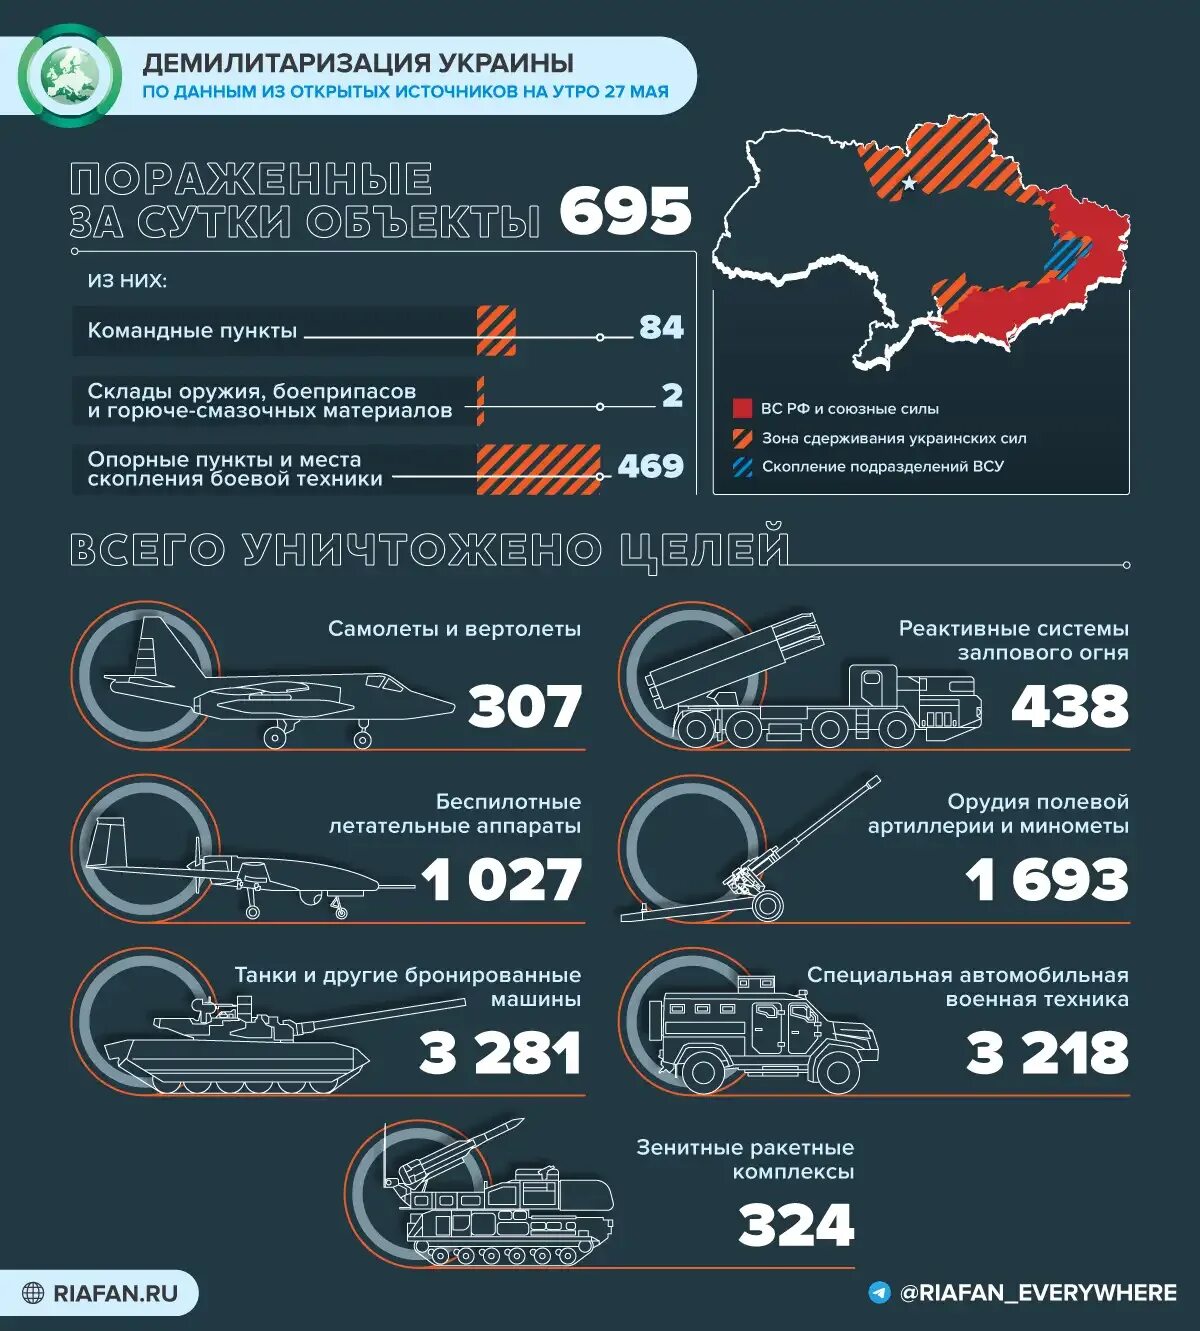 Сколько погибло по данным украины. Поставки оружия на Украину инфографика. Потери Украины инфографика. Потери украинских войск 2022 инфографика.